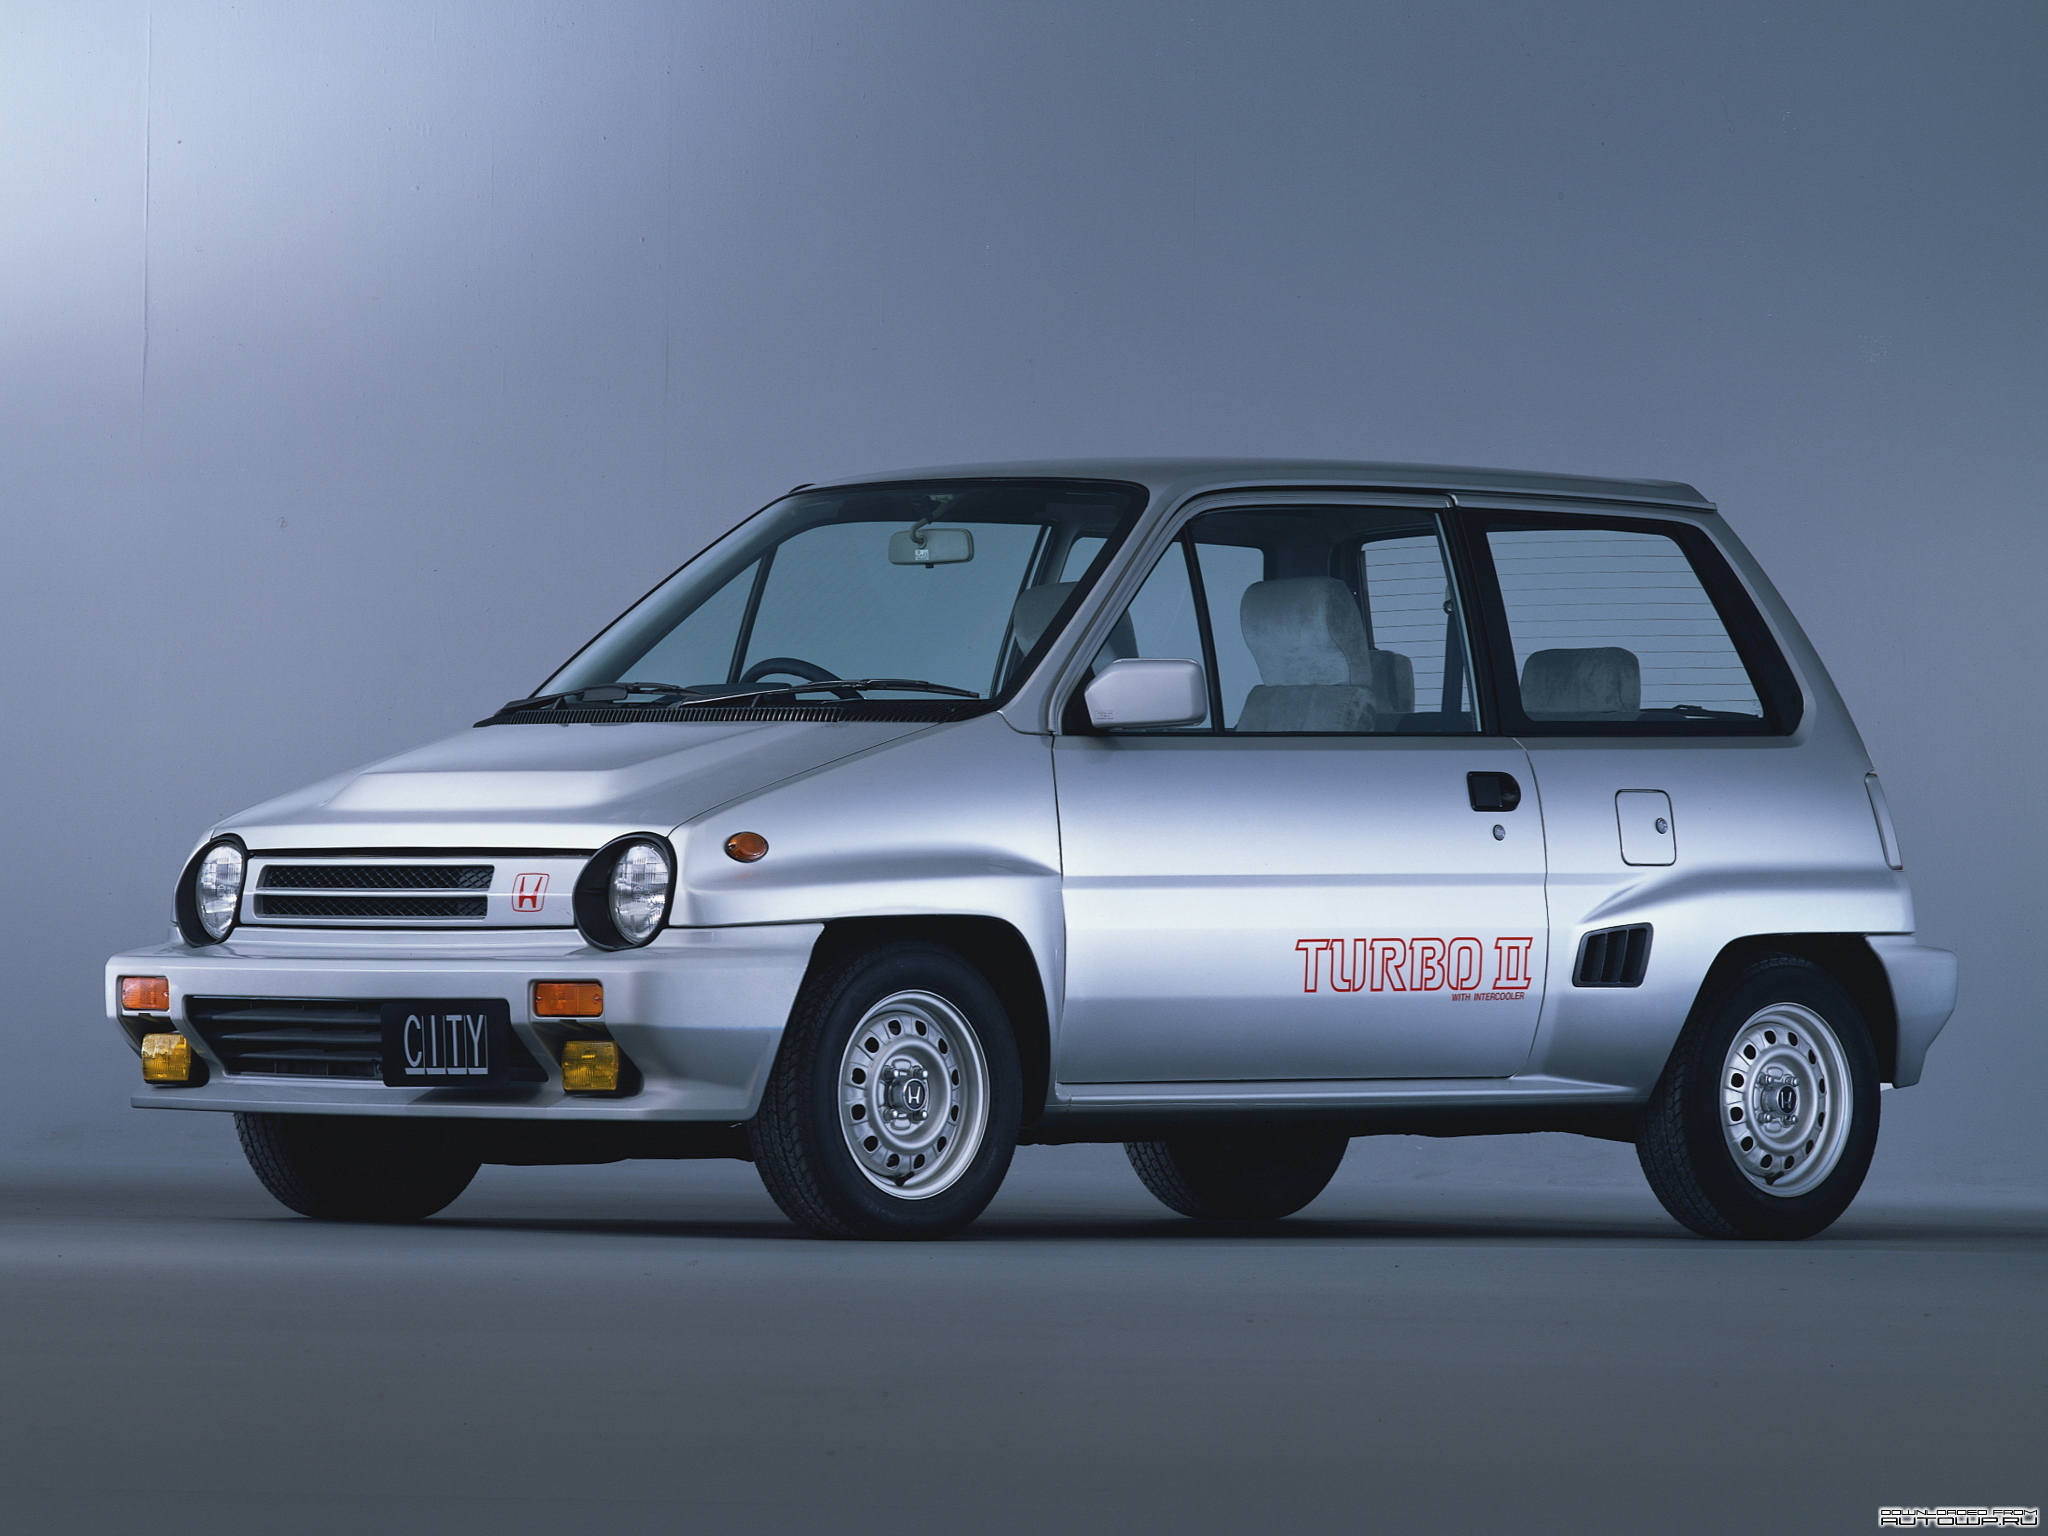 Honda produced turbo #6